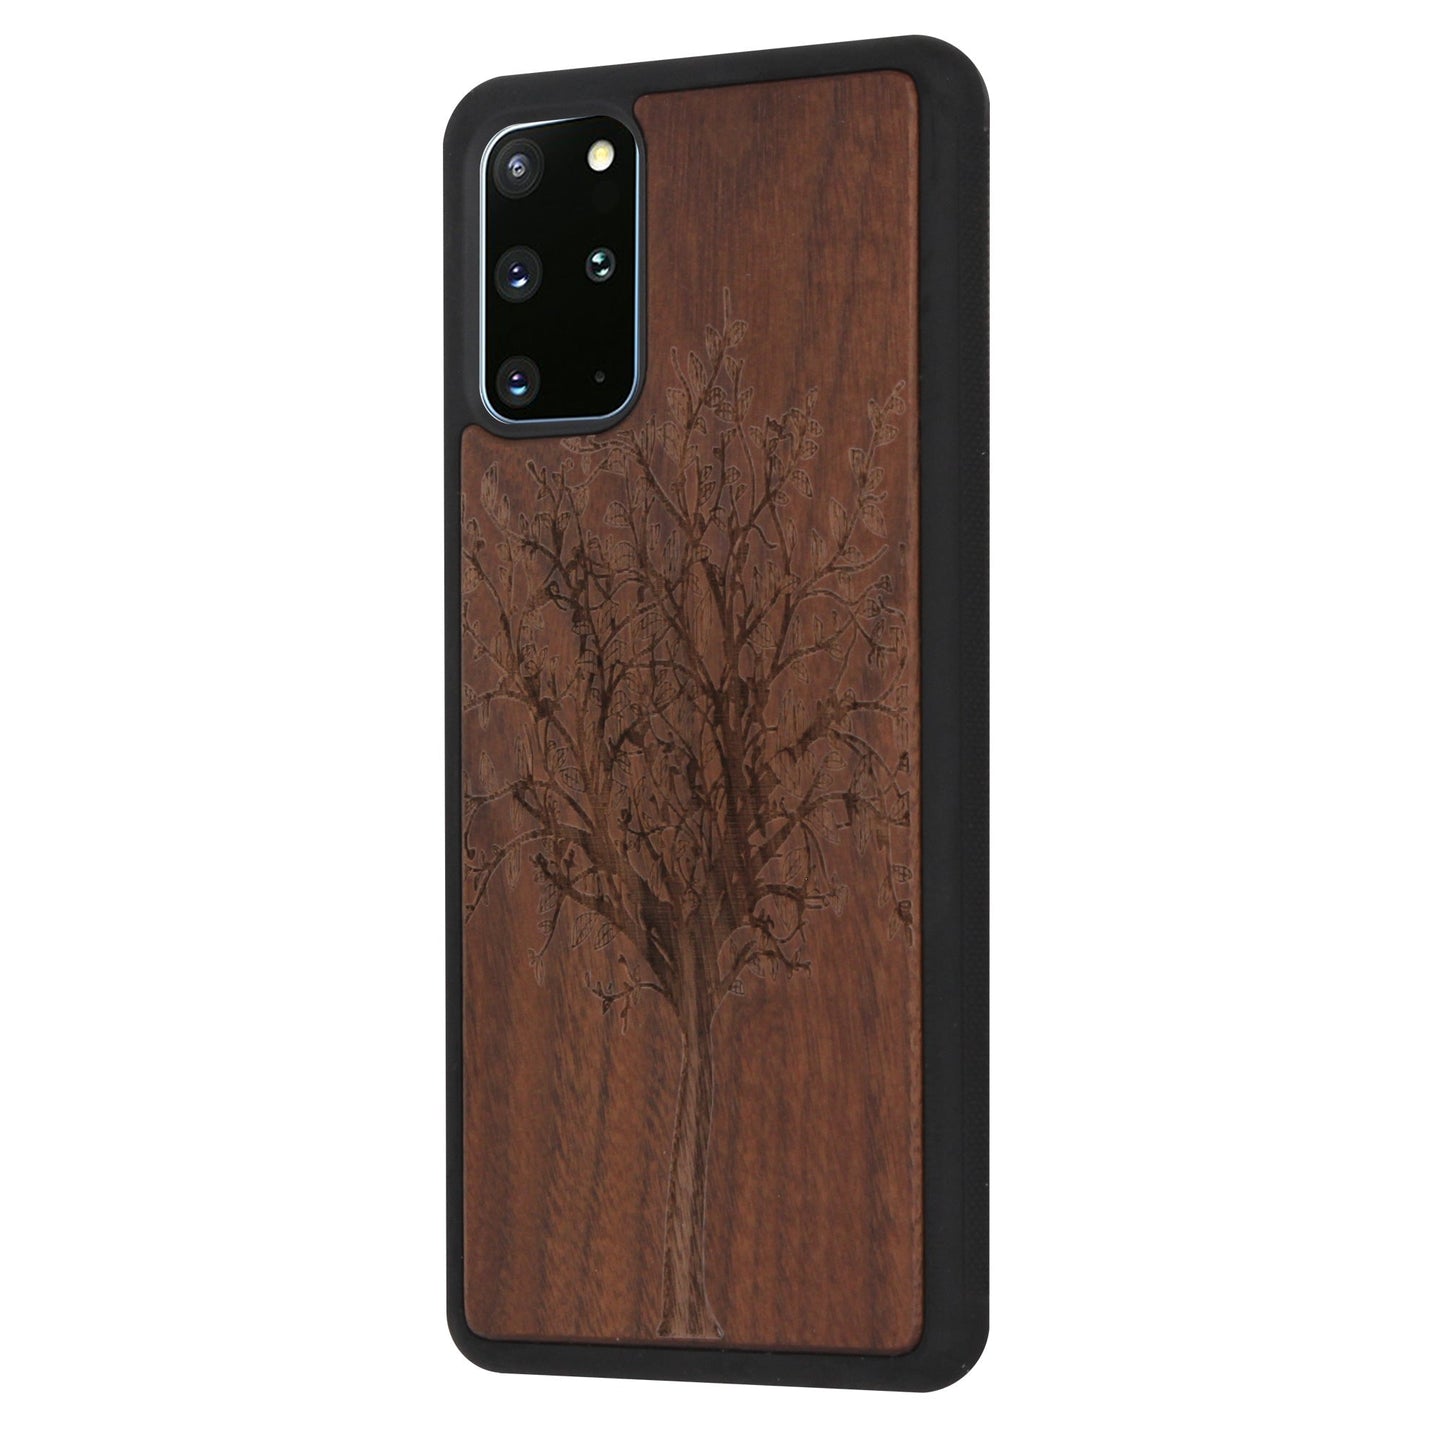 Lebensbaum Eden case made of walnut wood for Samsung Galaxy S20 Plus